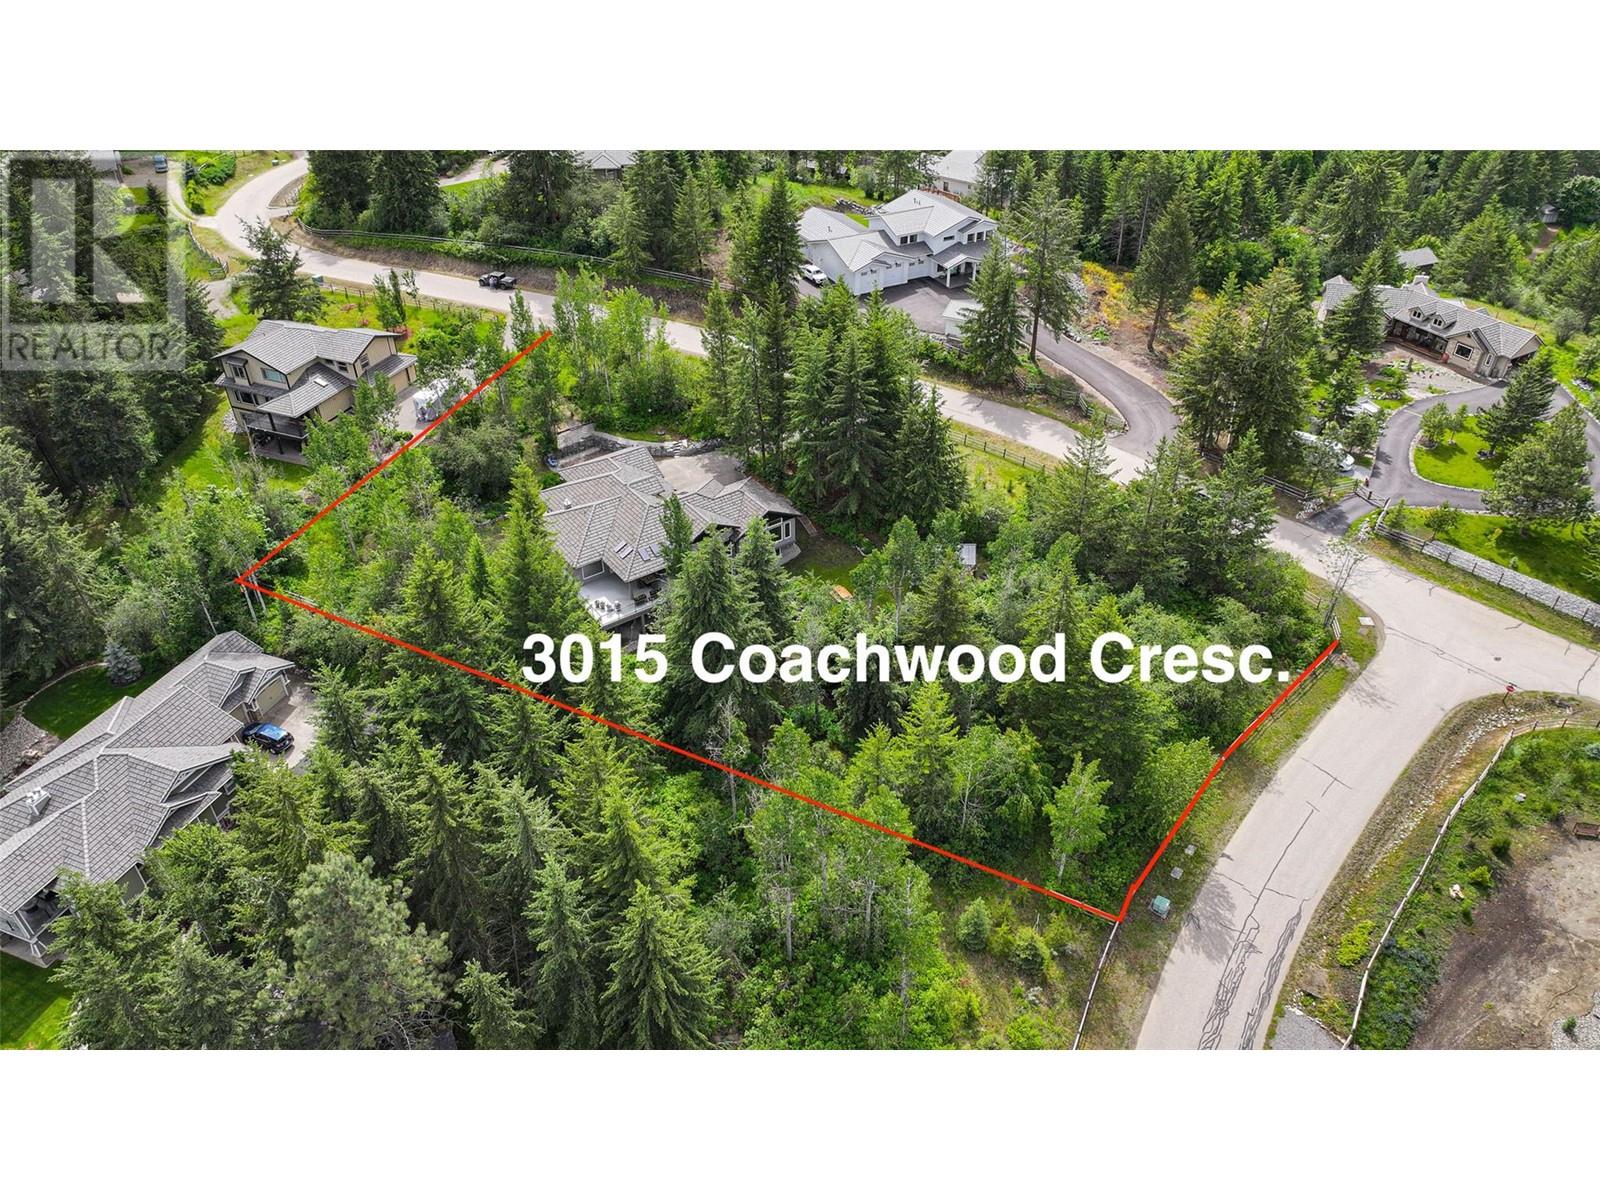 3015 Coachwood Crescent, coldstream, British Columbia